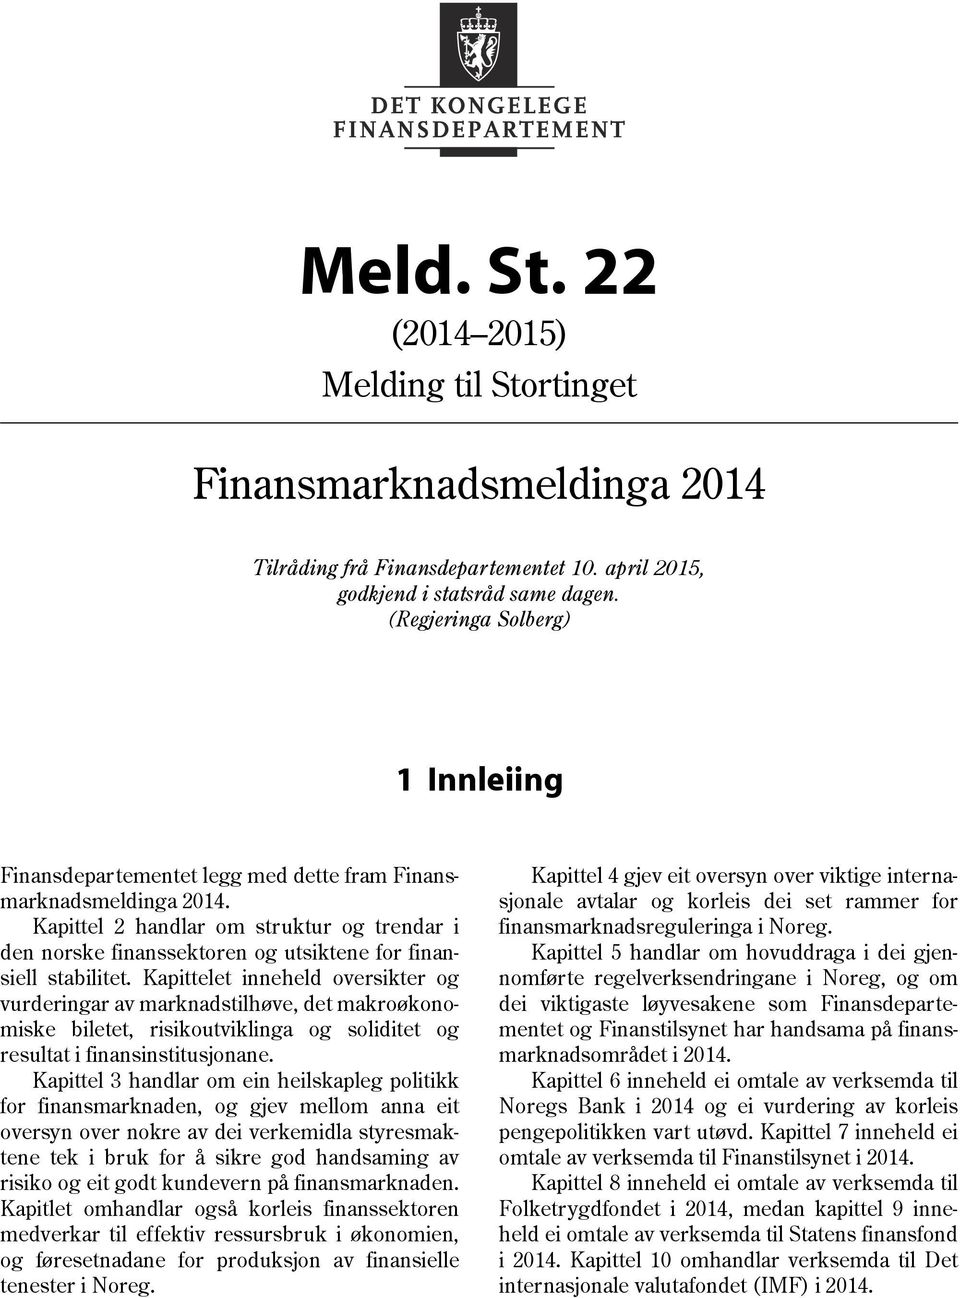 Kapittel 2 handlar om struktur og trendar i den norske finanssektoren og utsiktene for finansiell stabilitet.